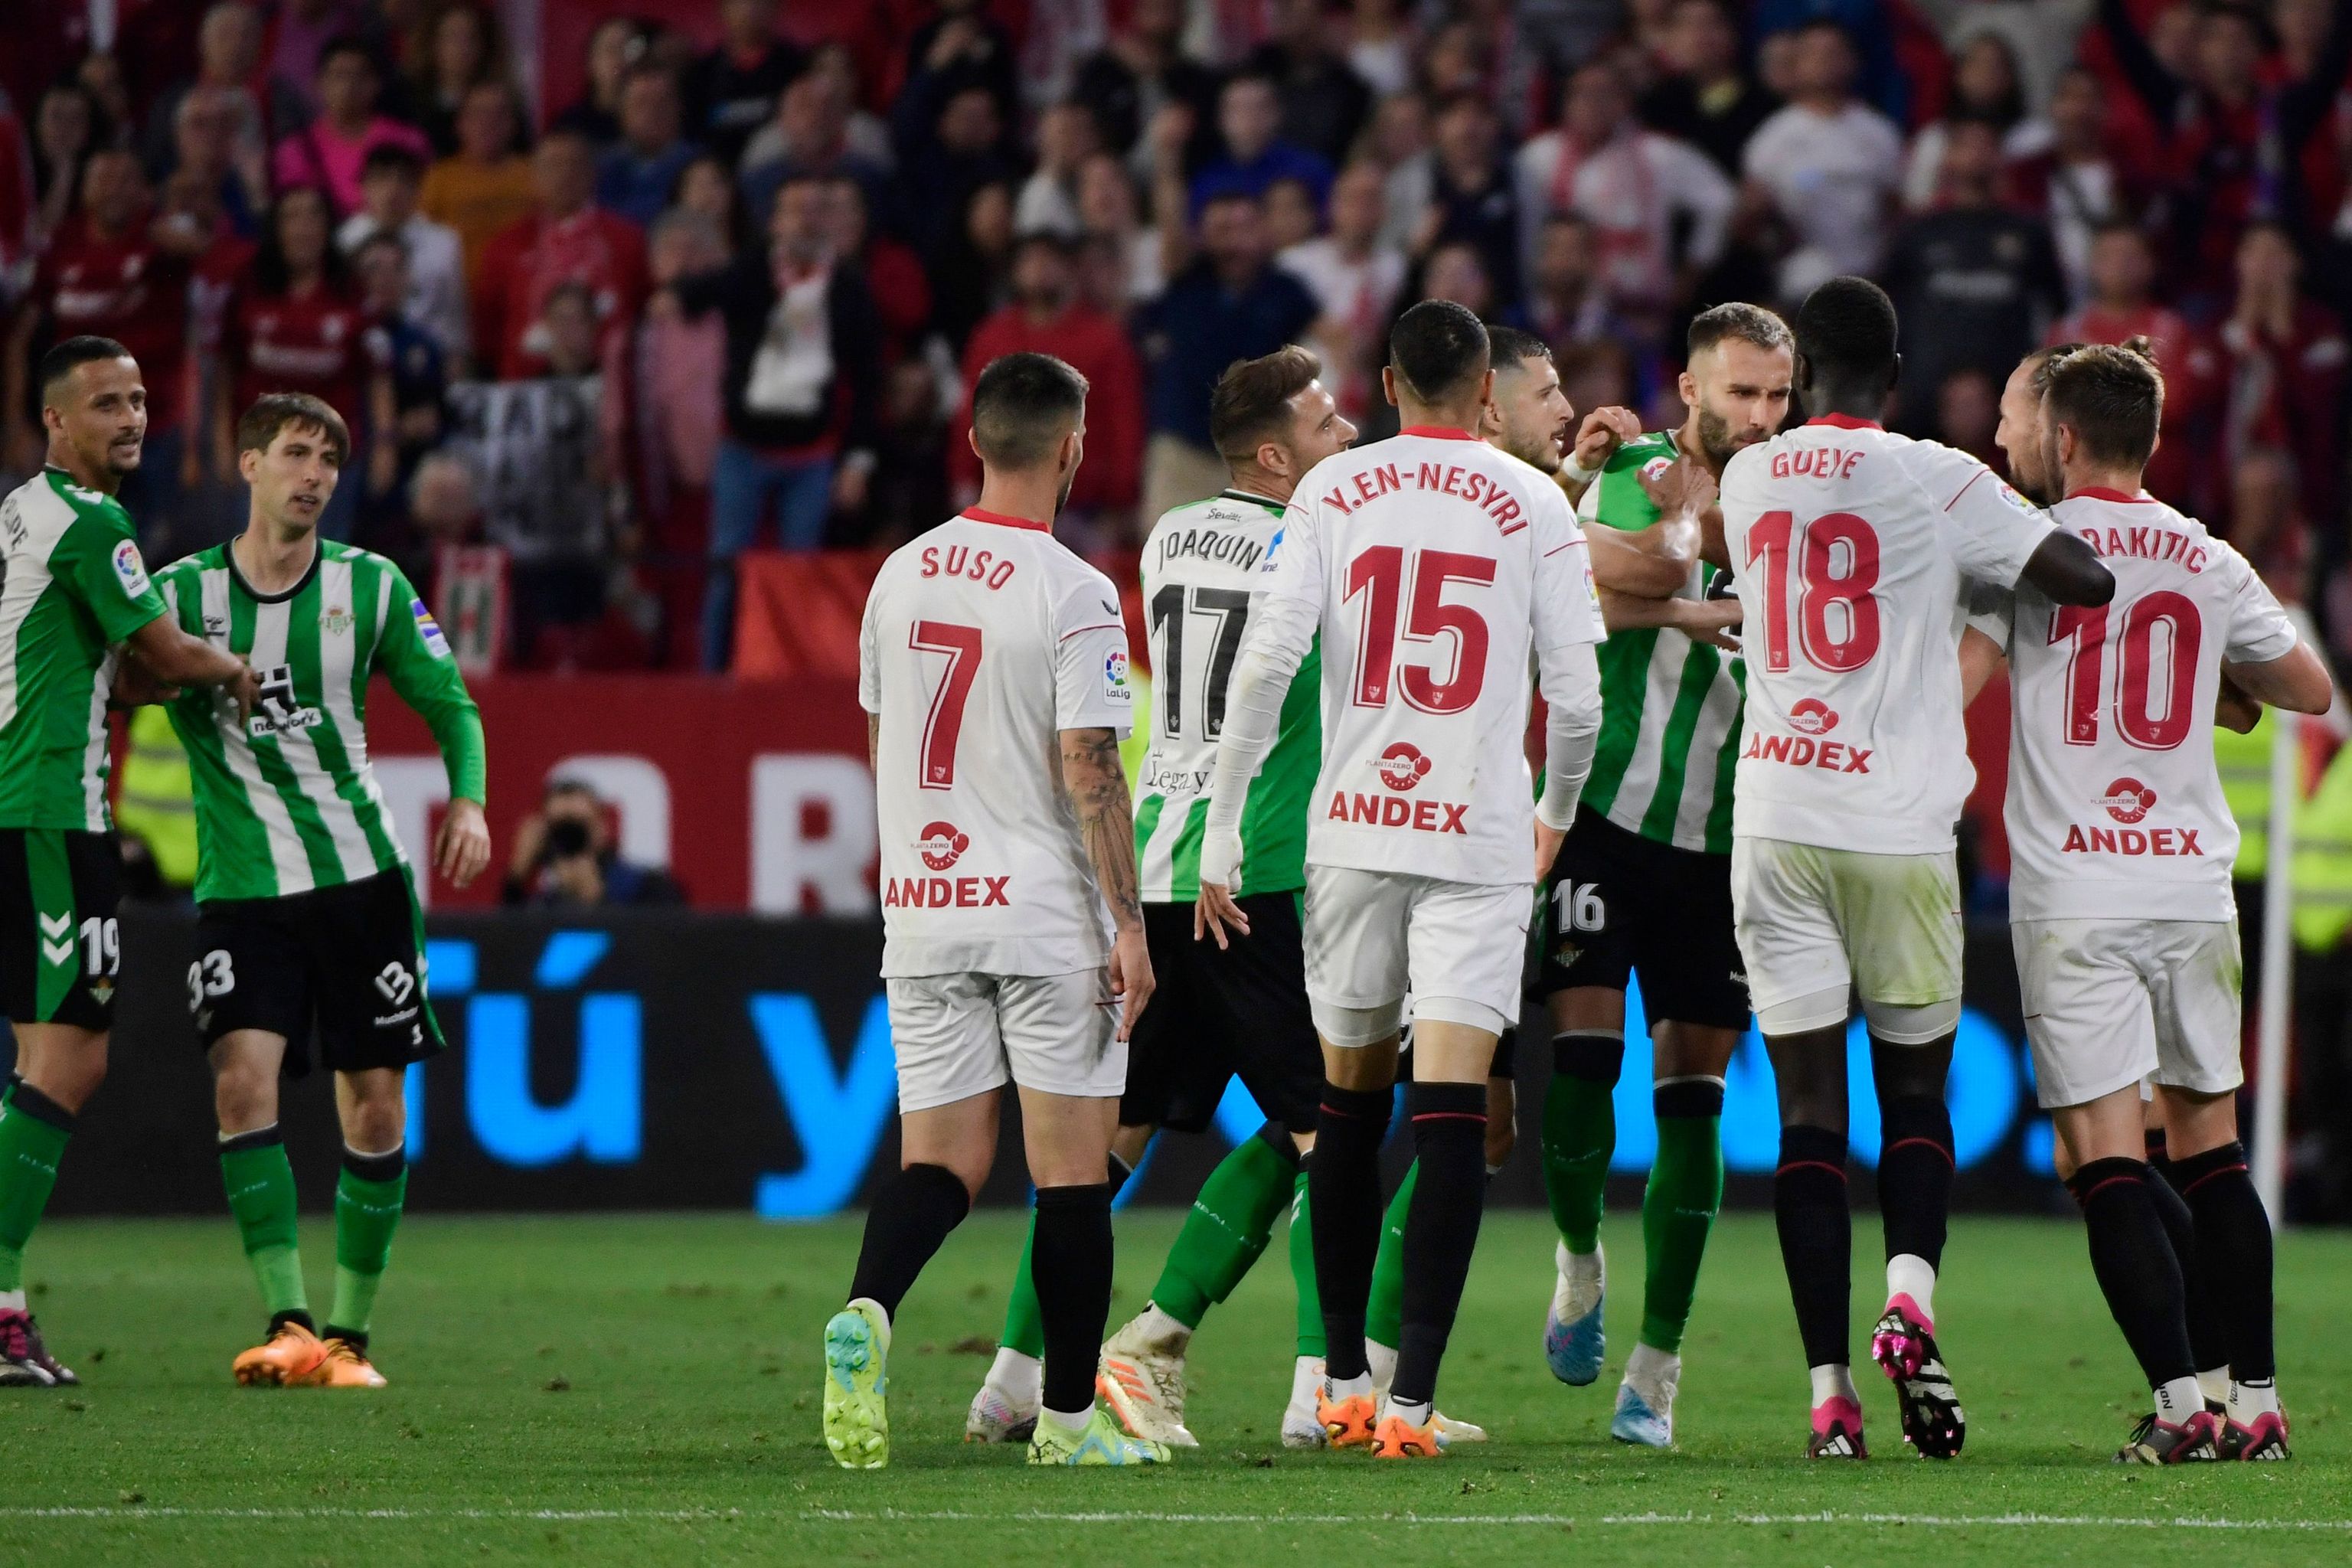 Tangana between players at Sevilla Betis